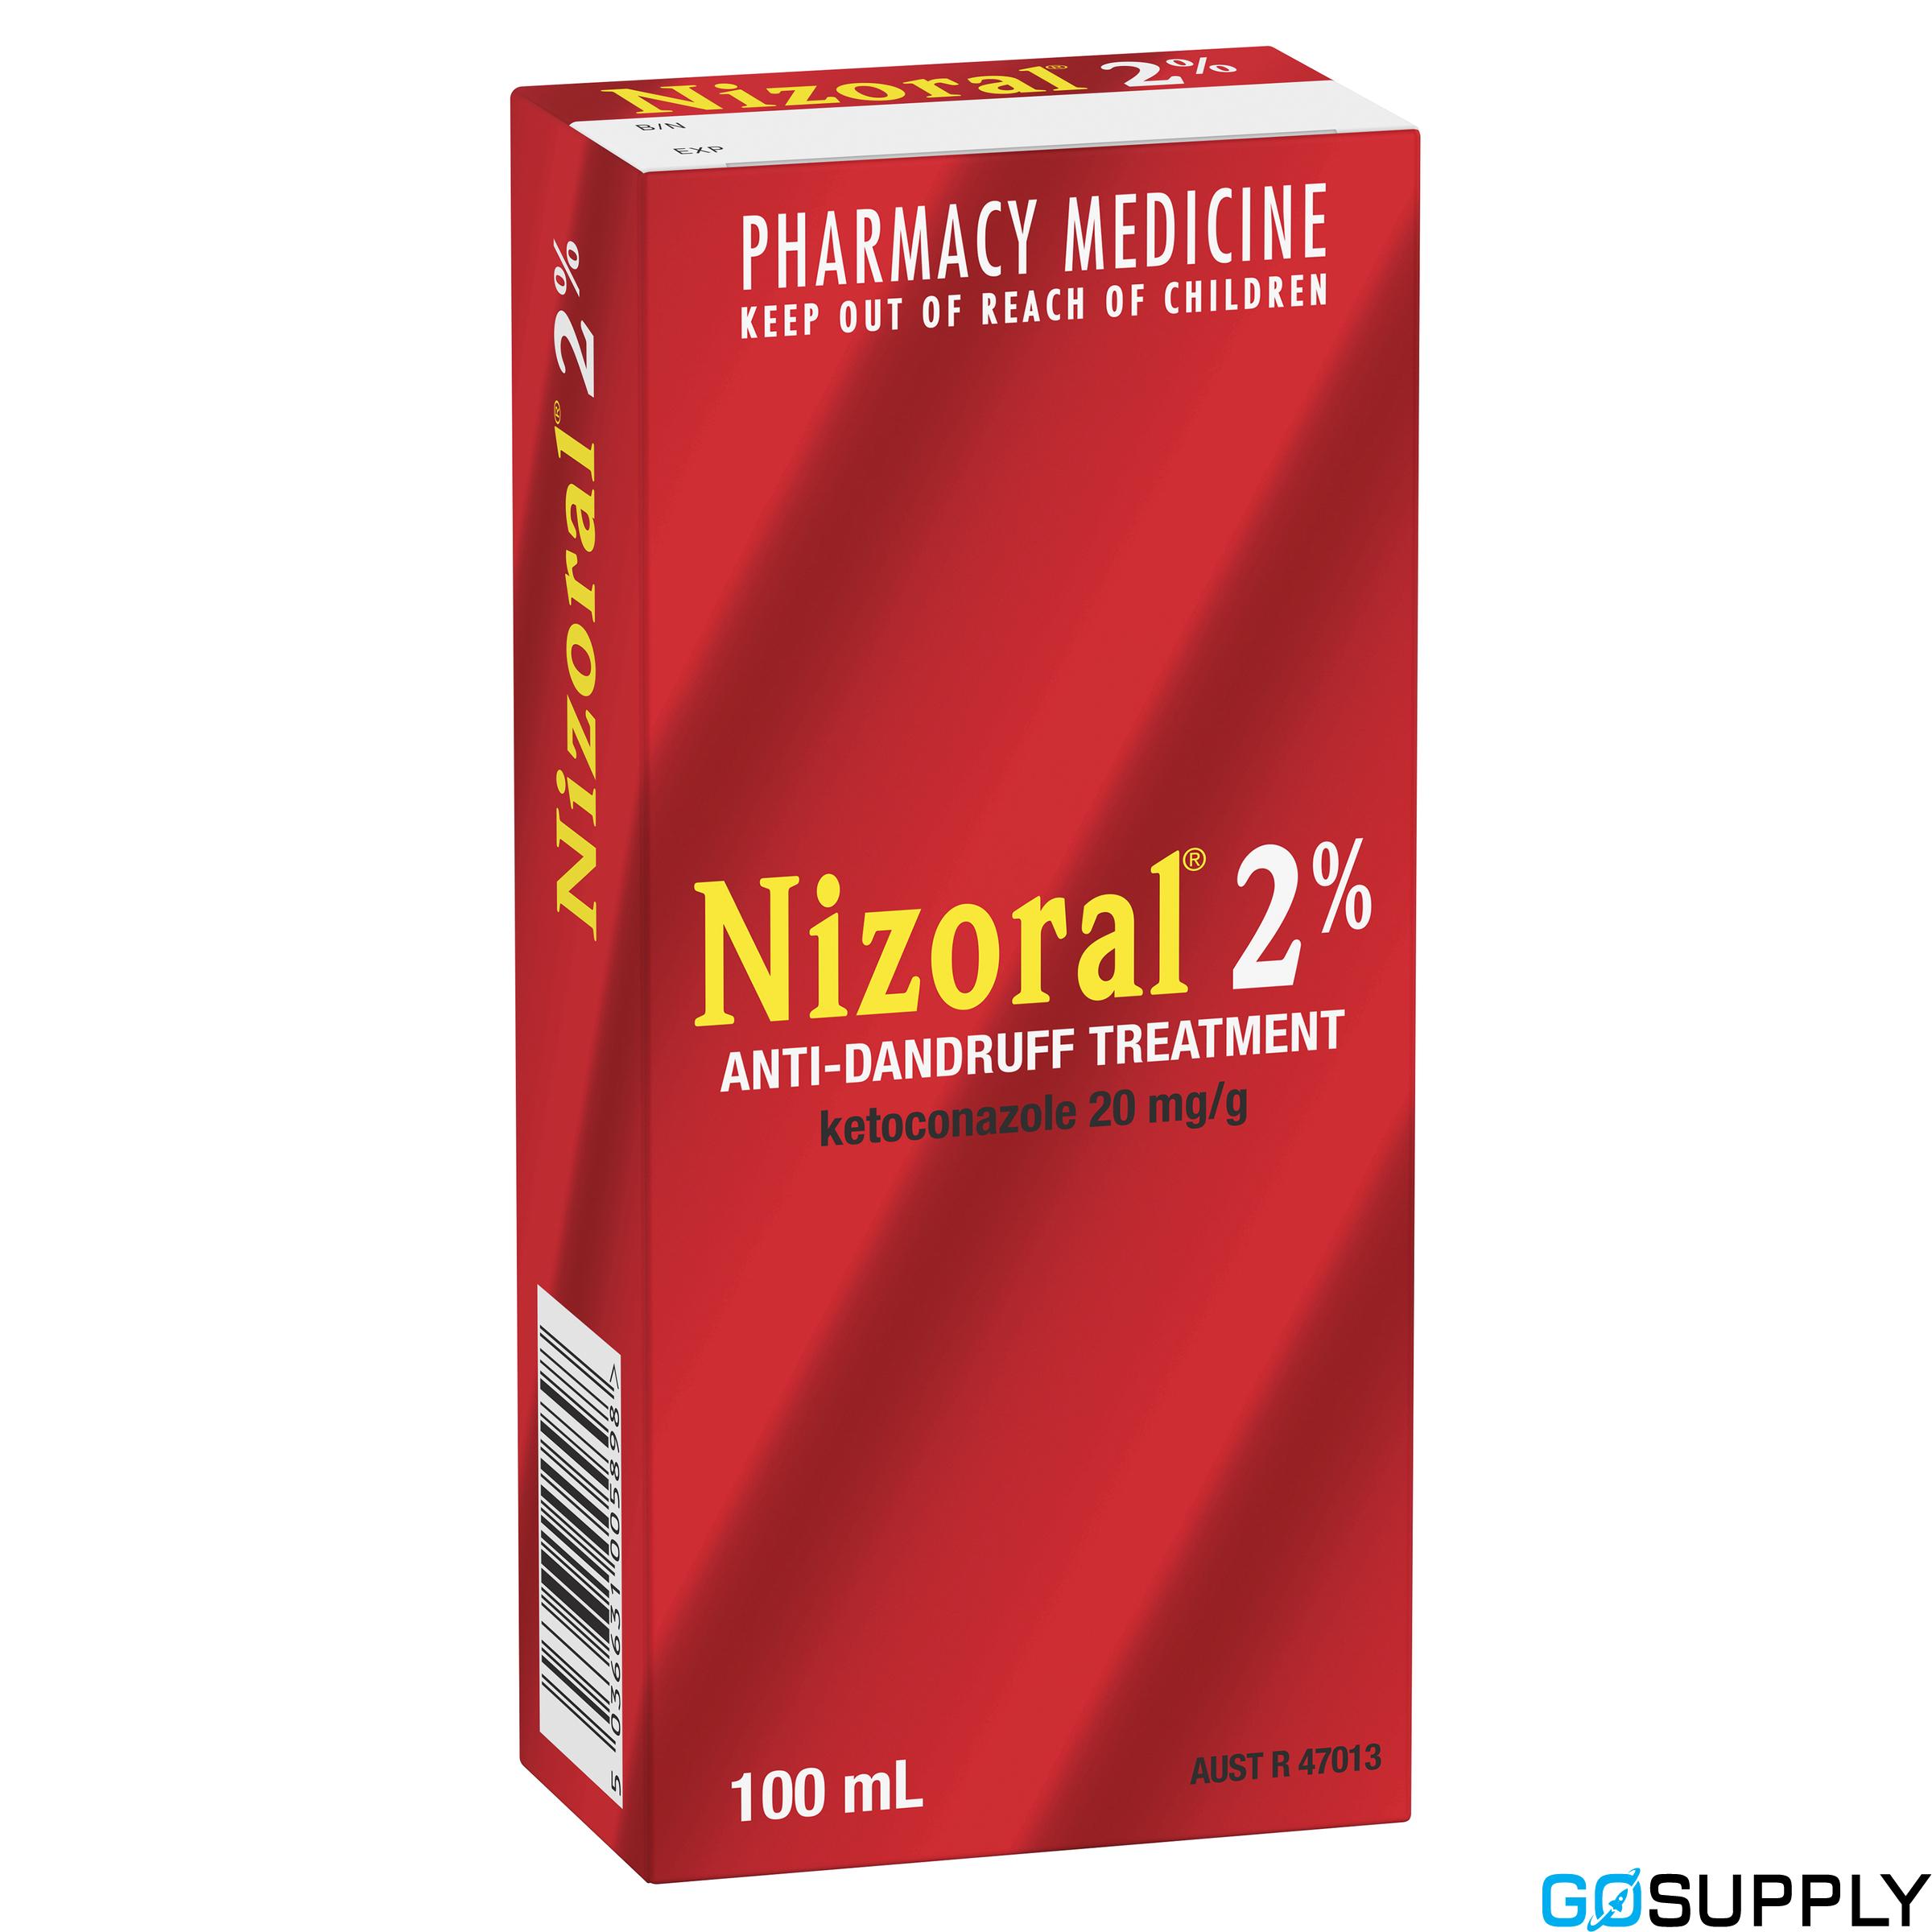 Nizoral 2% Anti-Dandruff Treatment 100mL